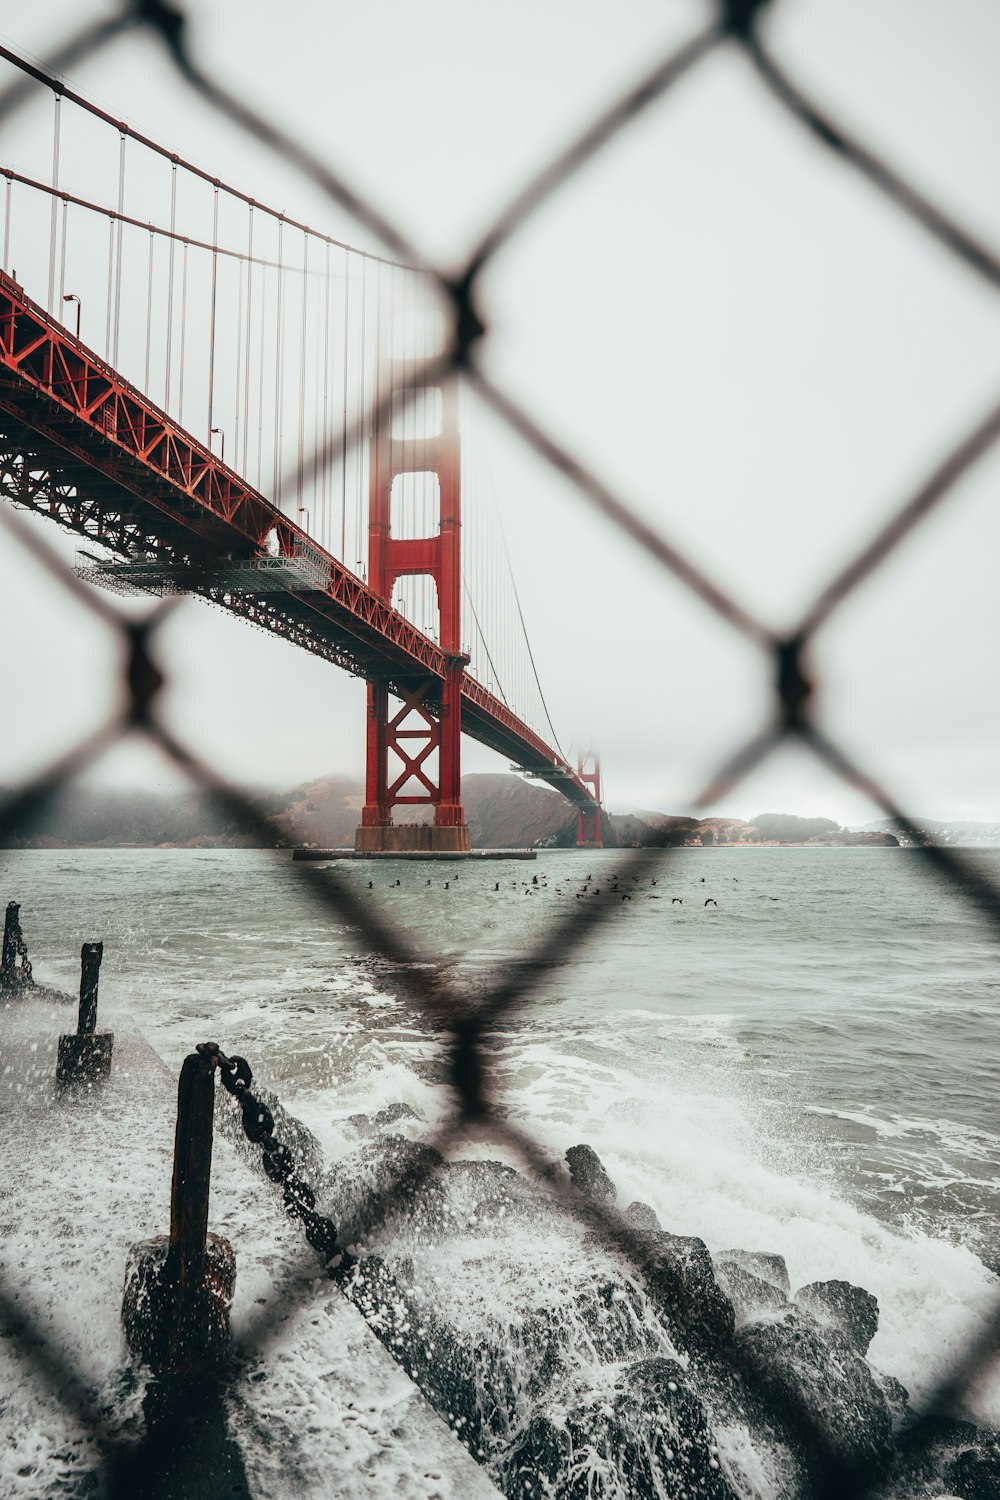 Una vista del Golden Gate Bridge attraverso una recinzione a catena